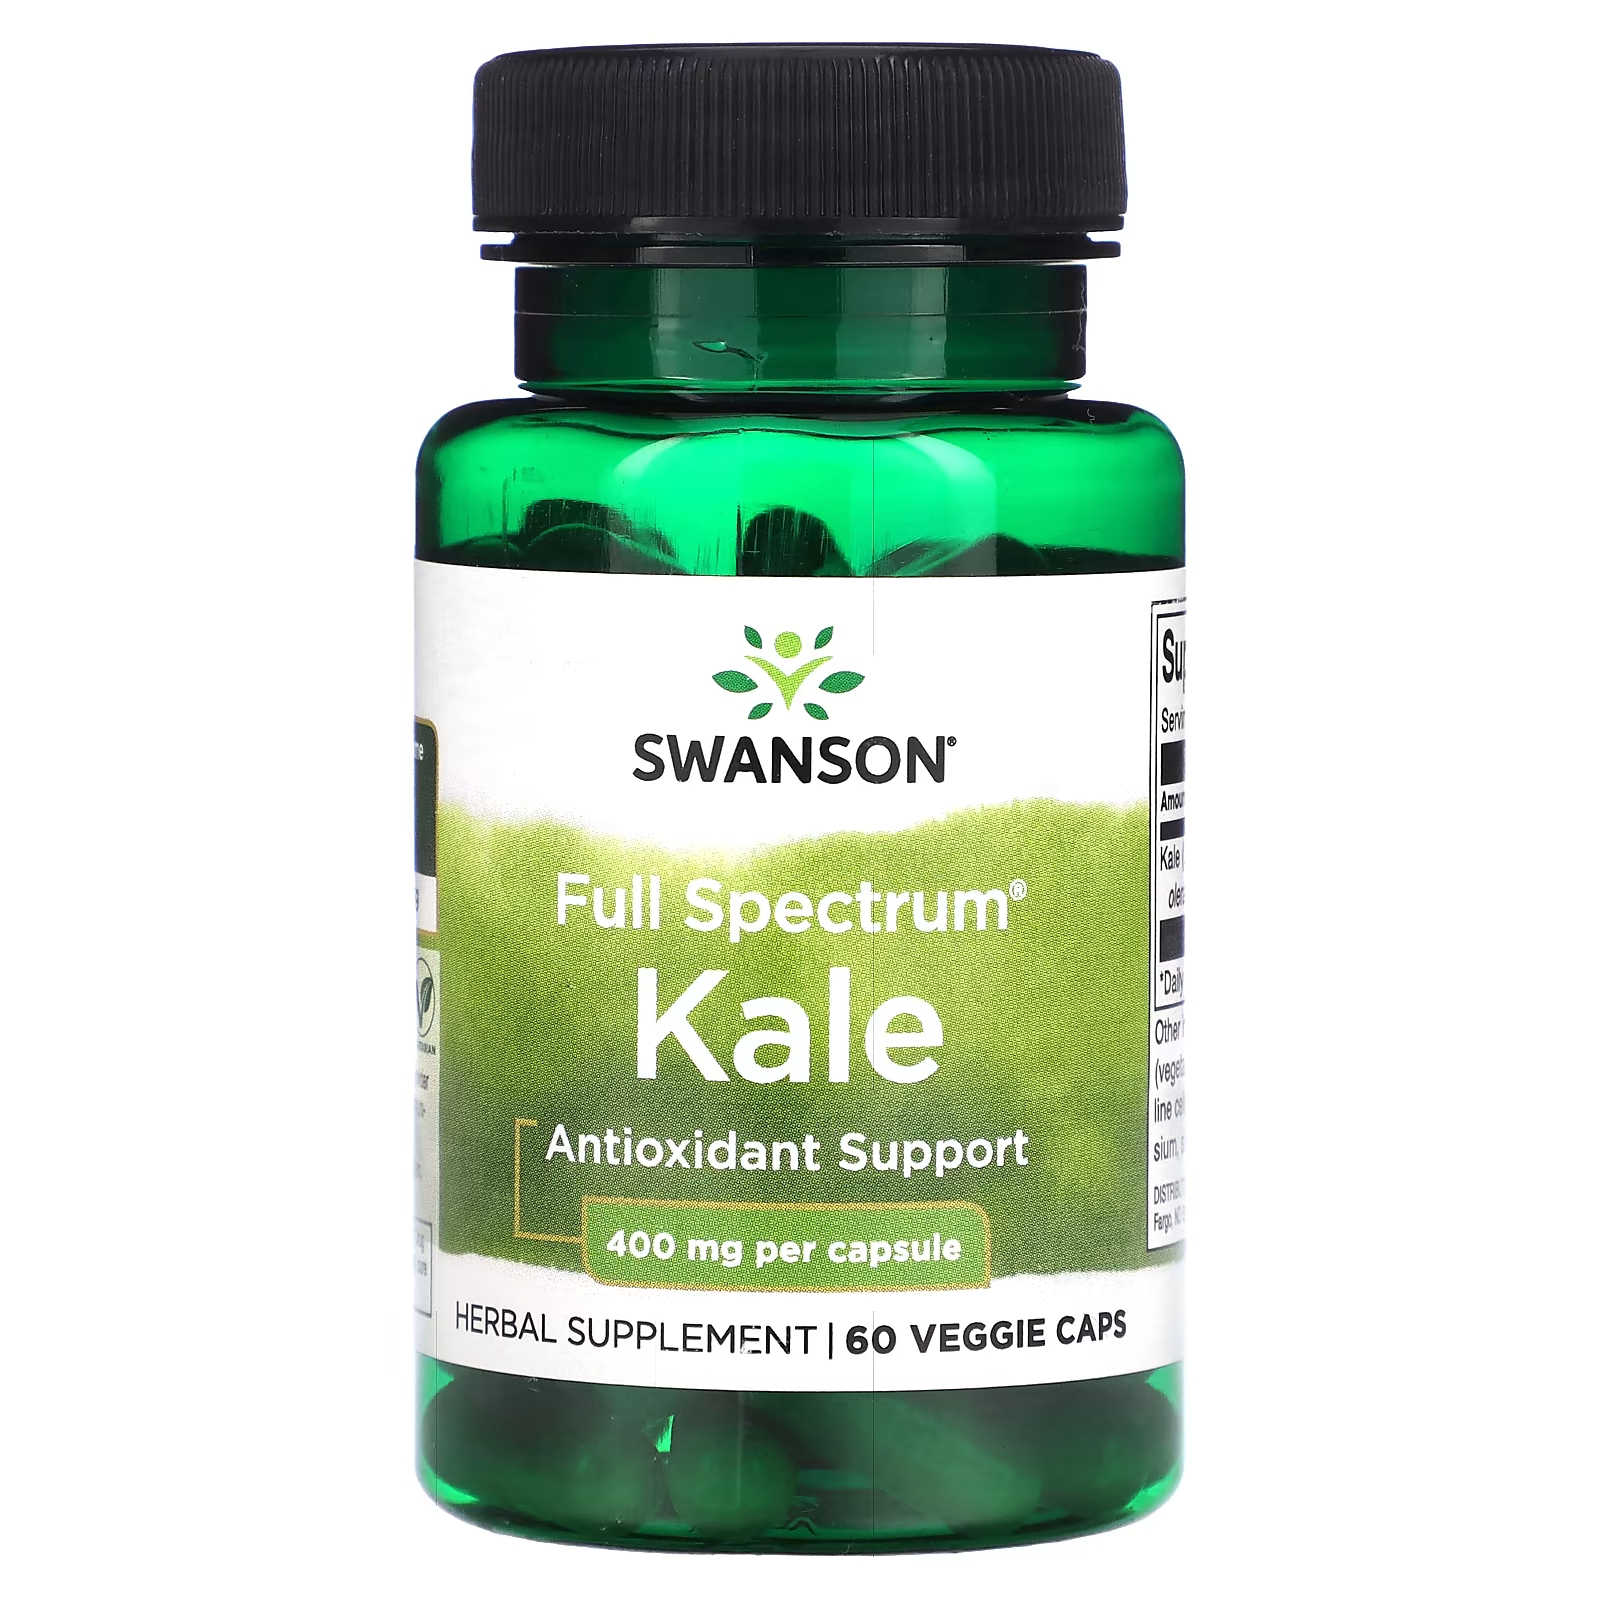 Пищевая добавка Swanson Кале полного спектра действия 400 мг, 60 вегетарианских капсул круглова н вегетарианство для начинающих